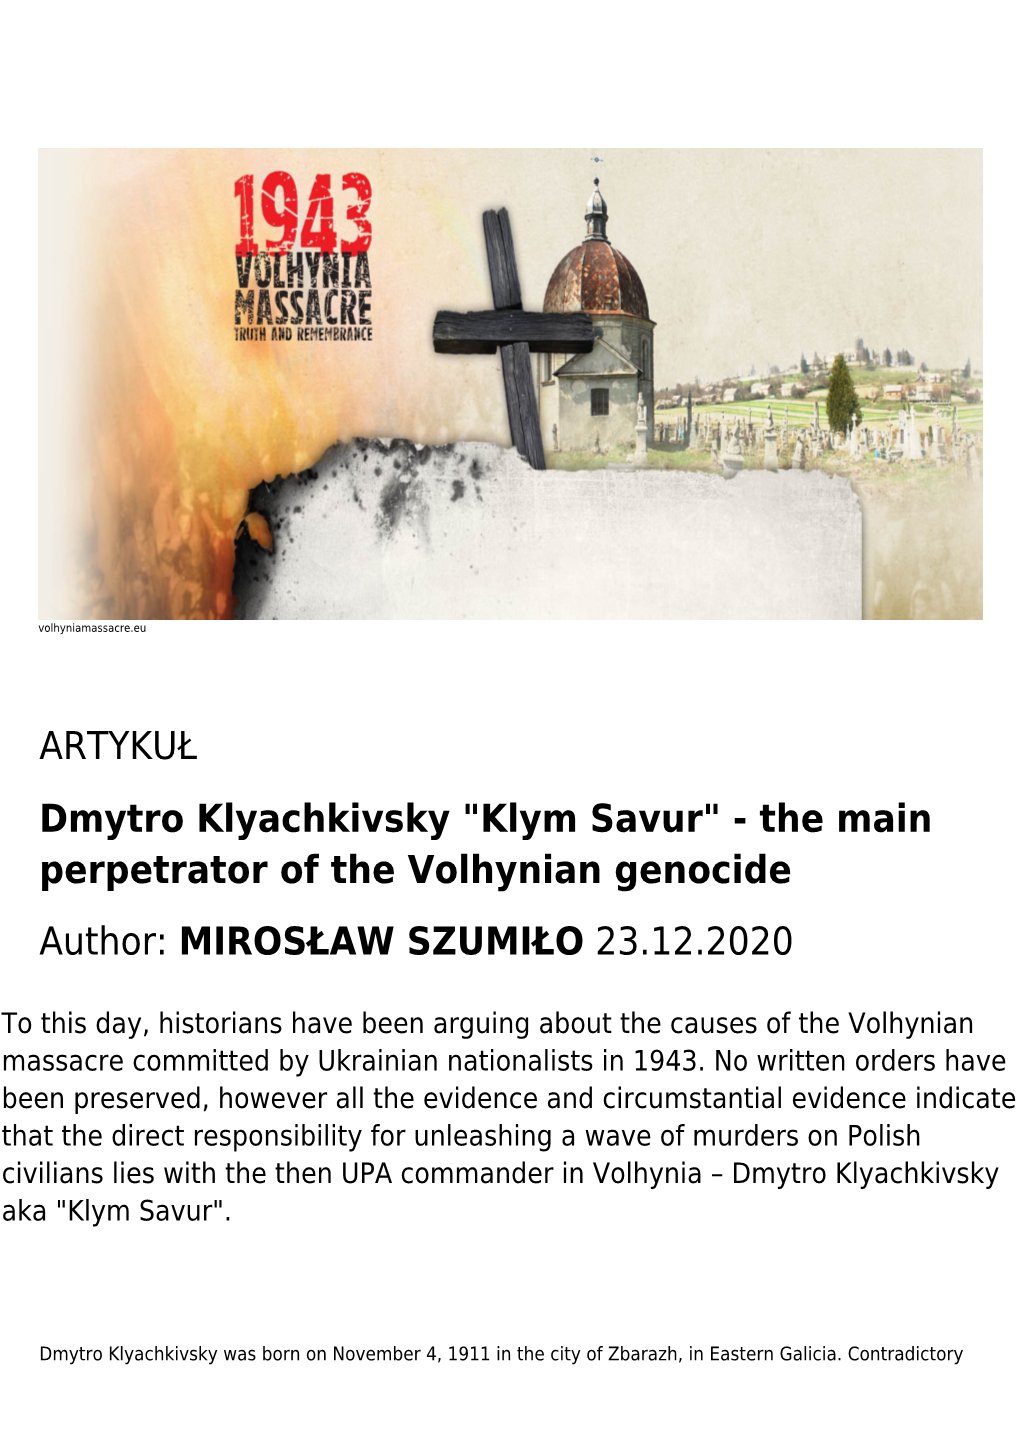 ARTYKUŁ Dmytro Klyachkivsky "Klym Savur" - the Main Perpetrator of the Volhynian Genocide Author: MIROSŁAW SZUMIŁO 23.12.2020